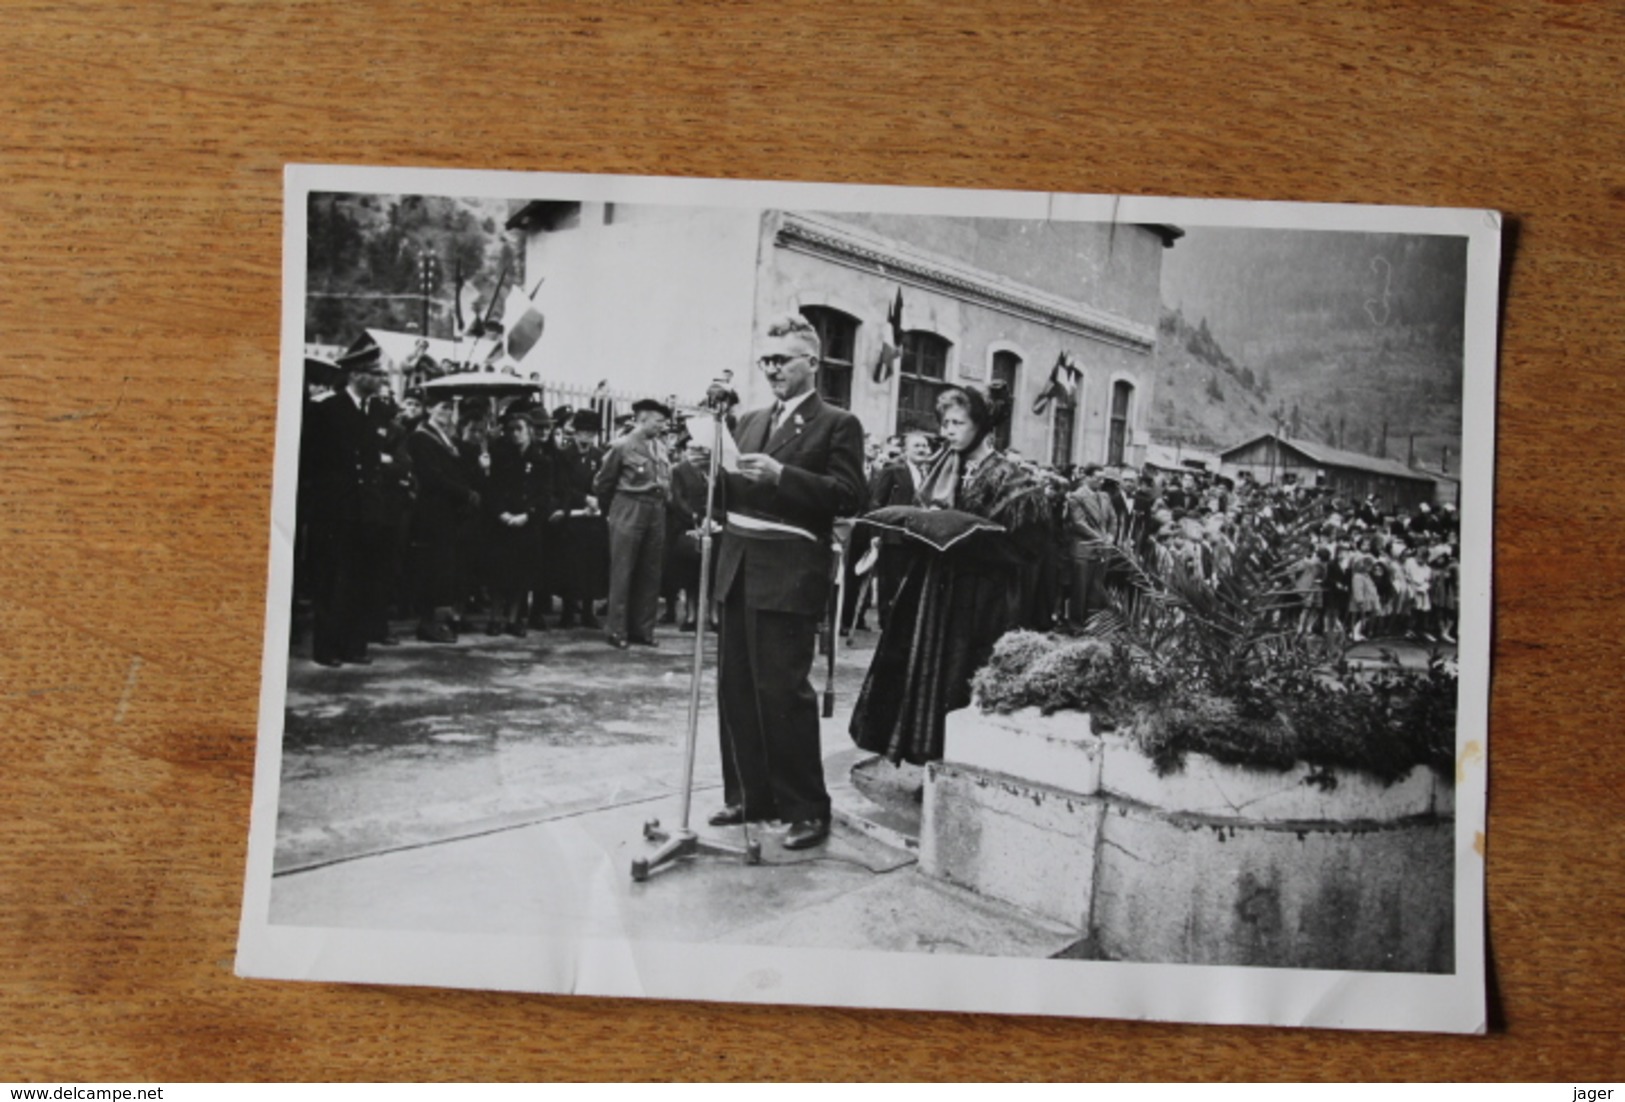 Serie de Photos MODANE Savoie 1946  fete de la Liberation bataillon de chasseurs alpins